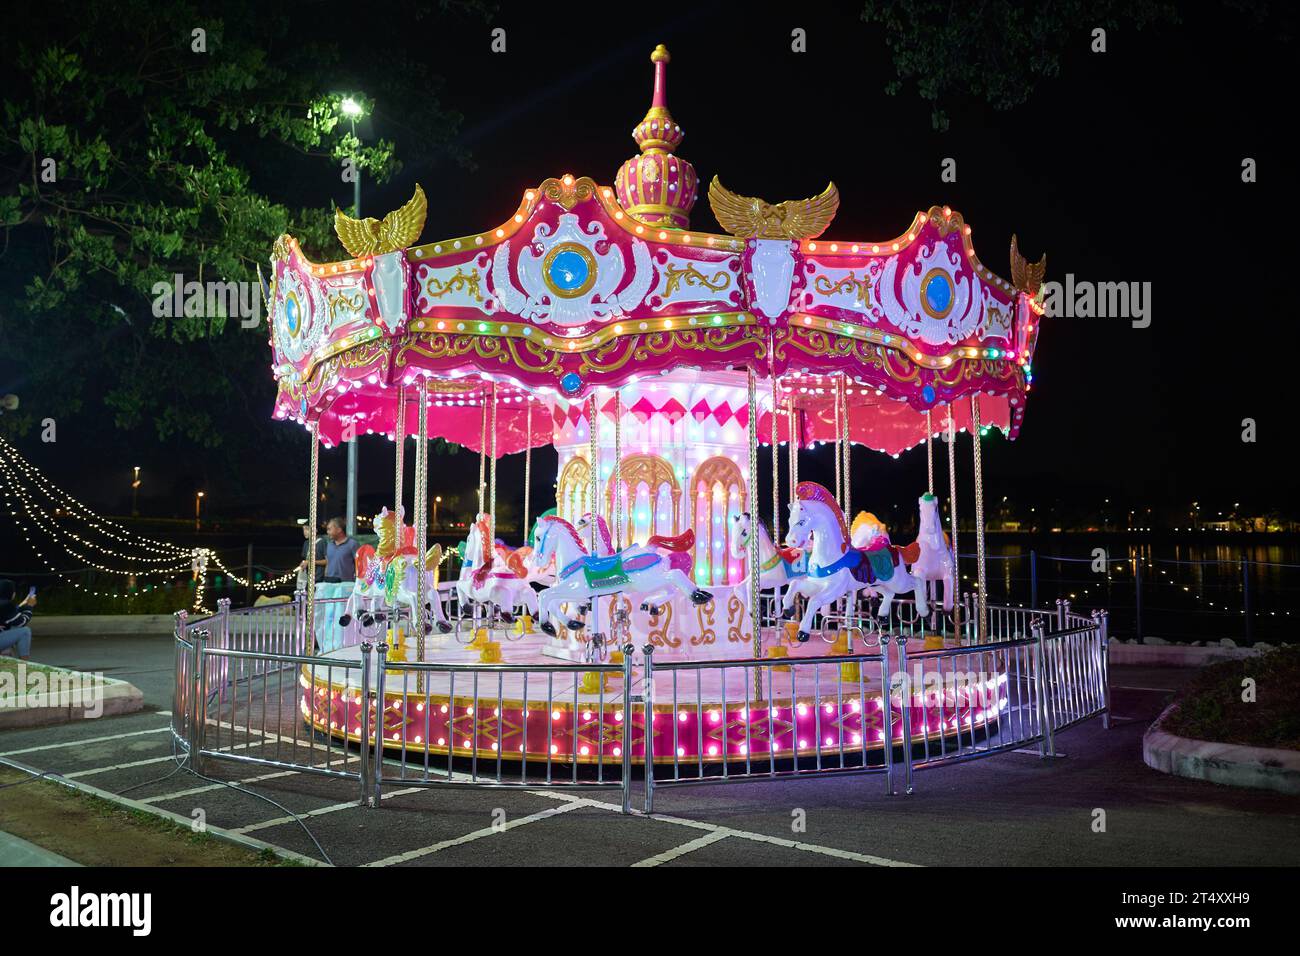 Carrousel classique illuminé la nuit dans la ville d'Ipoh, Malaisie Banque D'Images